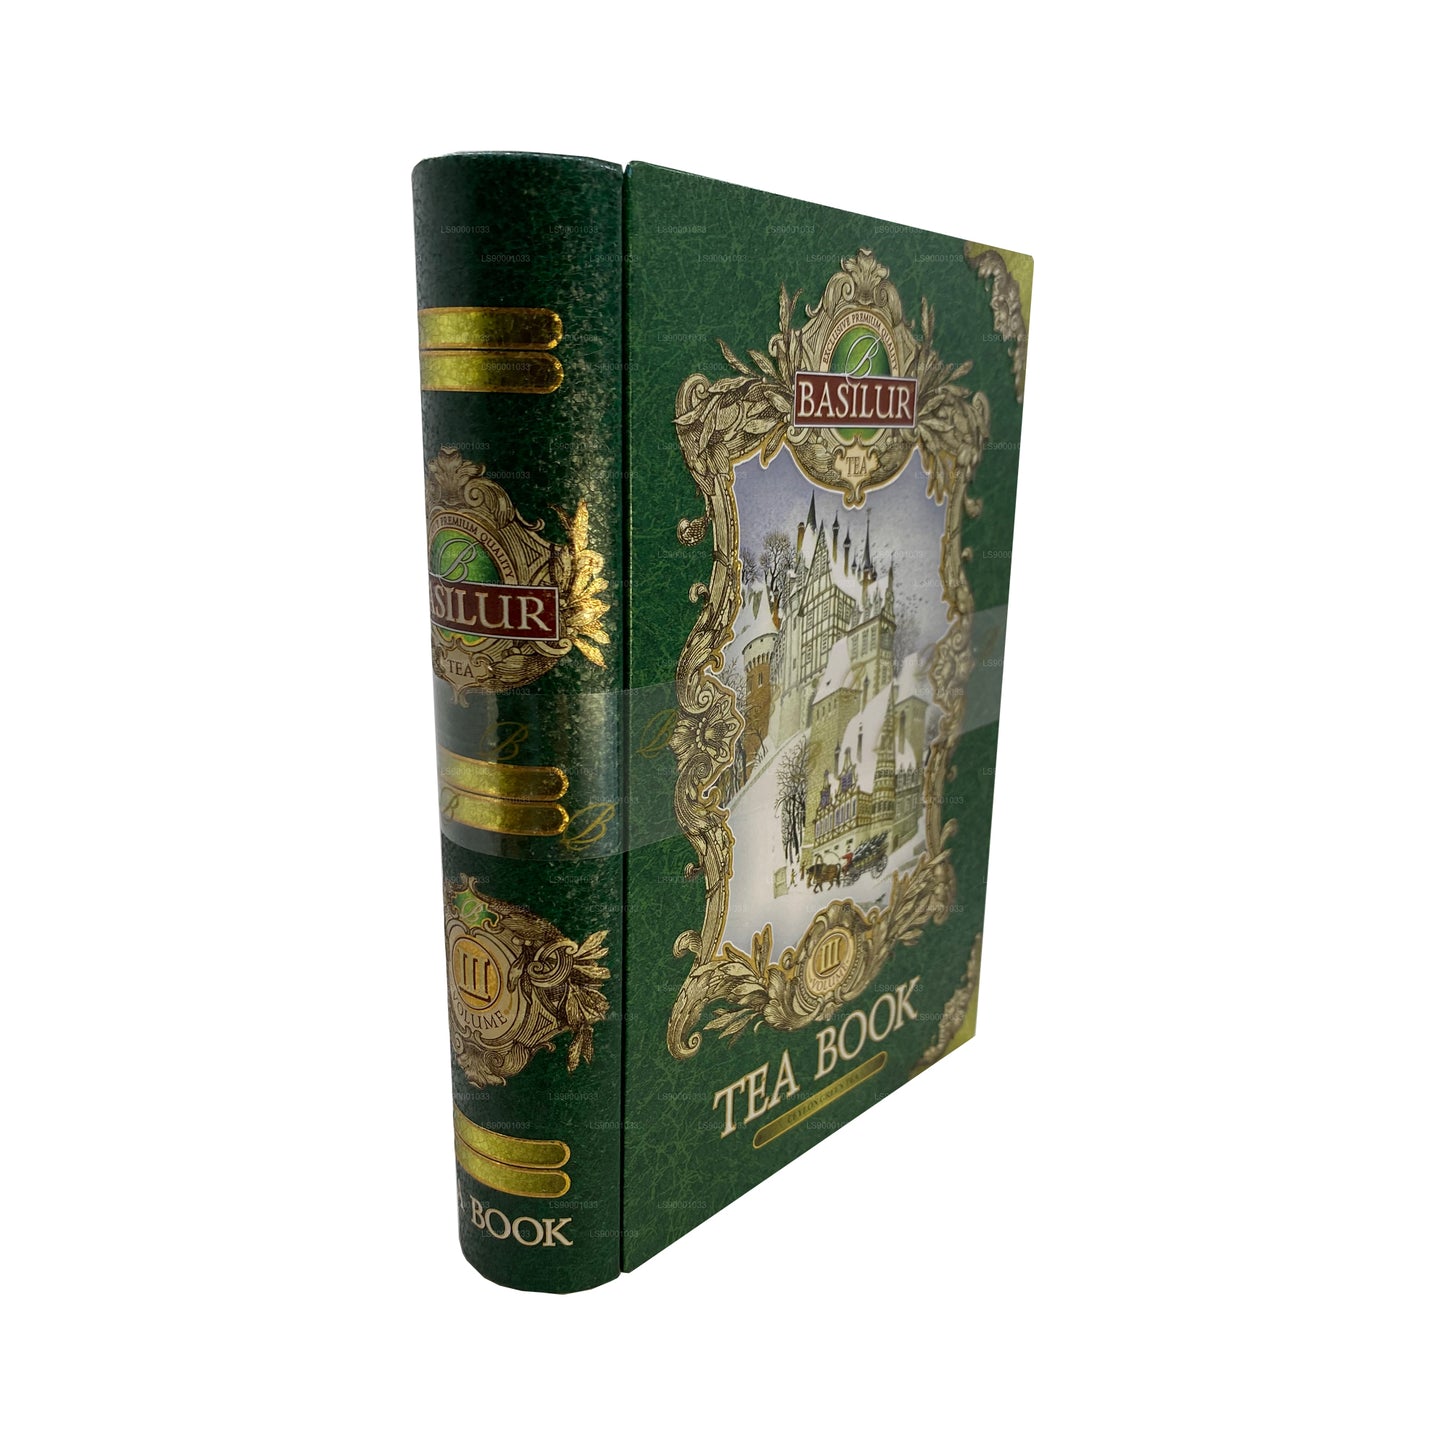 Basilur Çay Kitabı “Çay Kitabı Cilt III - Yeşil” (100g) Caddy